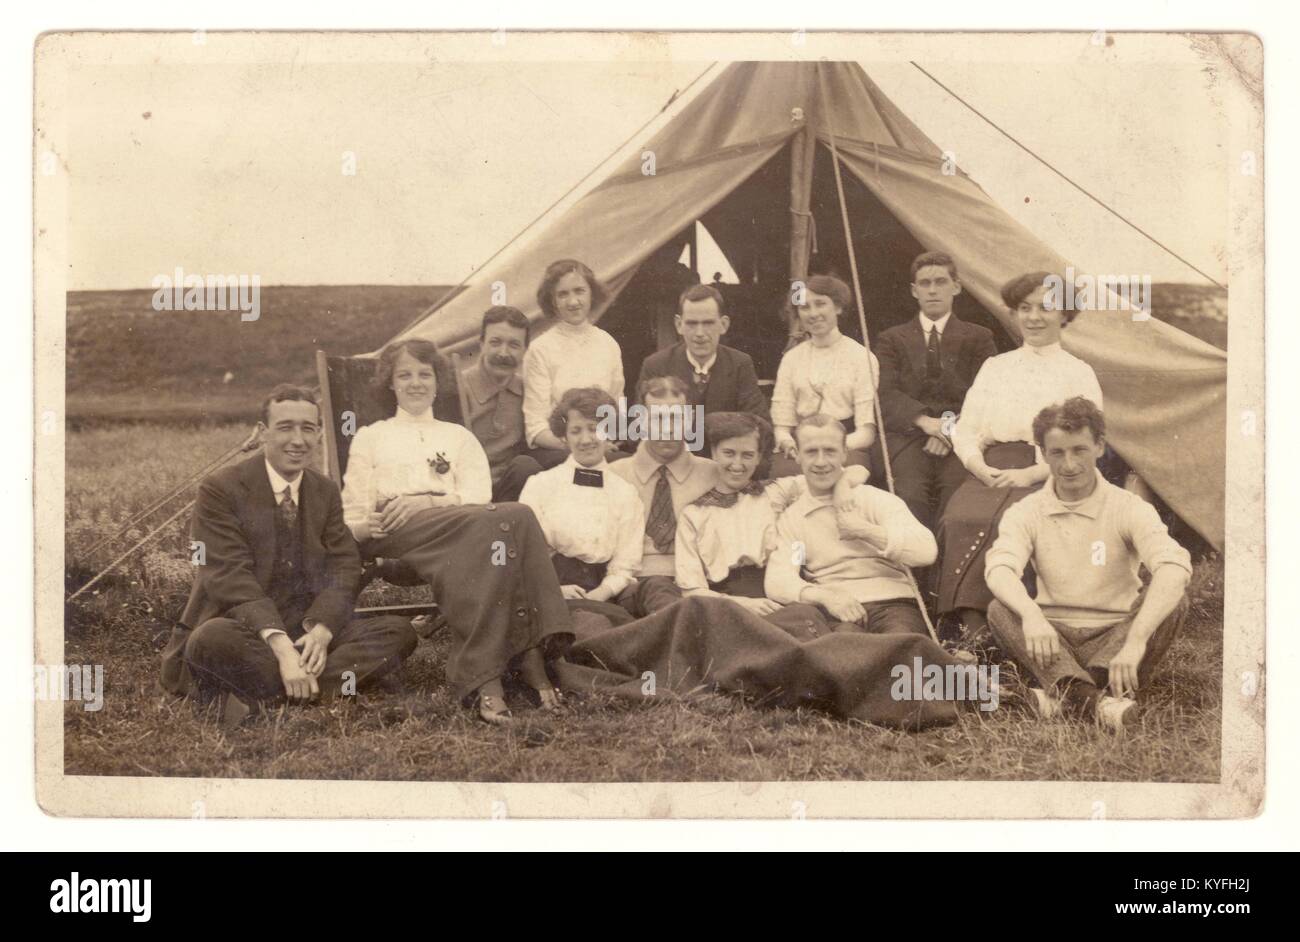 Frühe 1900er Postkarte einer Gruppe von Männern und Frauen, die unter Leinwand campen, sich entspannen und sich außerhalb eines Zeltdachs Vergnügen, wahrscheinlich kurz vor dem Ersten Weltkrieg, um 1913, U.K. Stockfoto